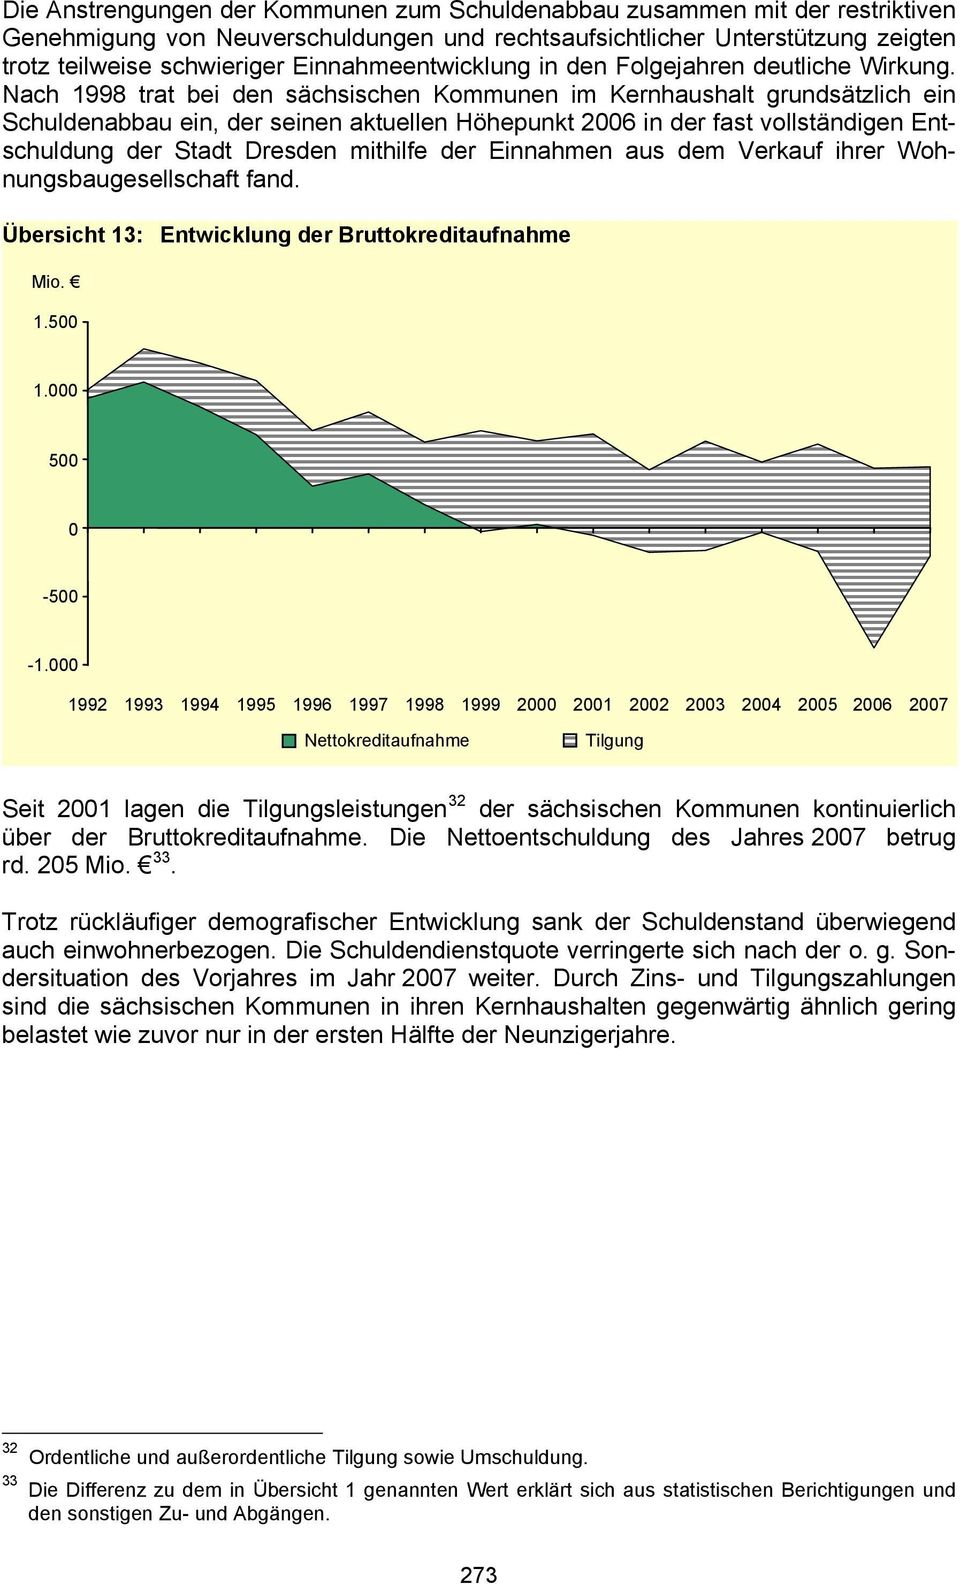 Nach 1998 trat bei den sächsischen Kommunen im Kernhaushalt grundsätzlich ein Schuldenabbau ein, der seinen aktuellen Höhepunkt 2006 in der fast vollständigen Entschuldung der Stadt Dresden mithilfe